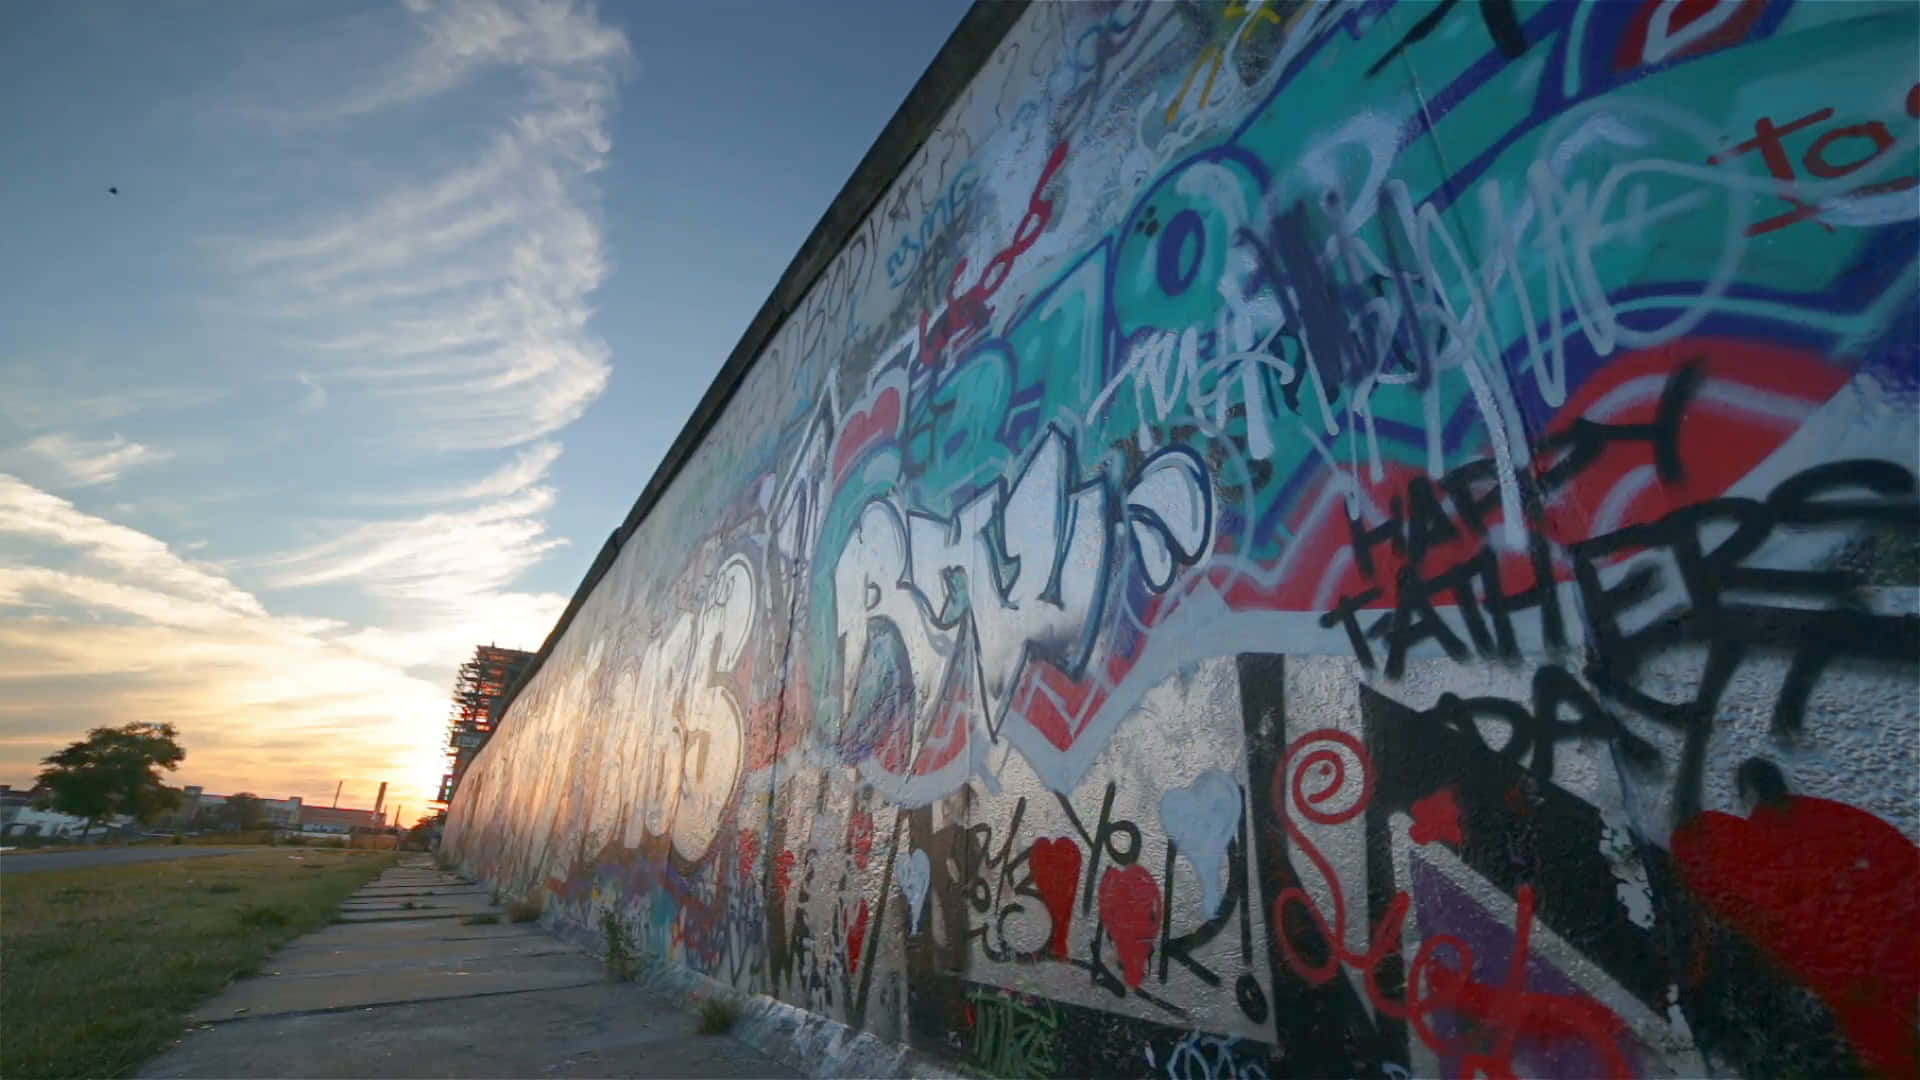 Berlin Wall Graffiti During Sunset Wallpaper